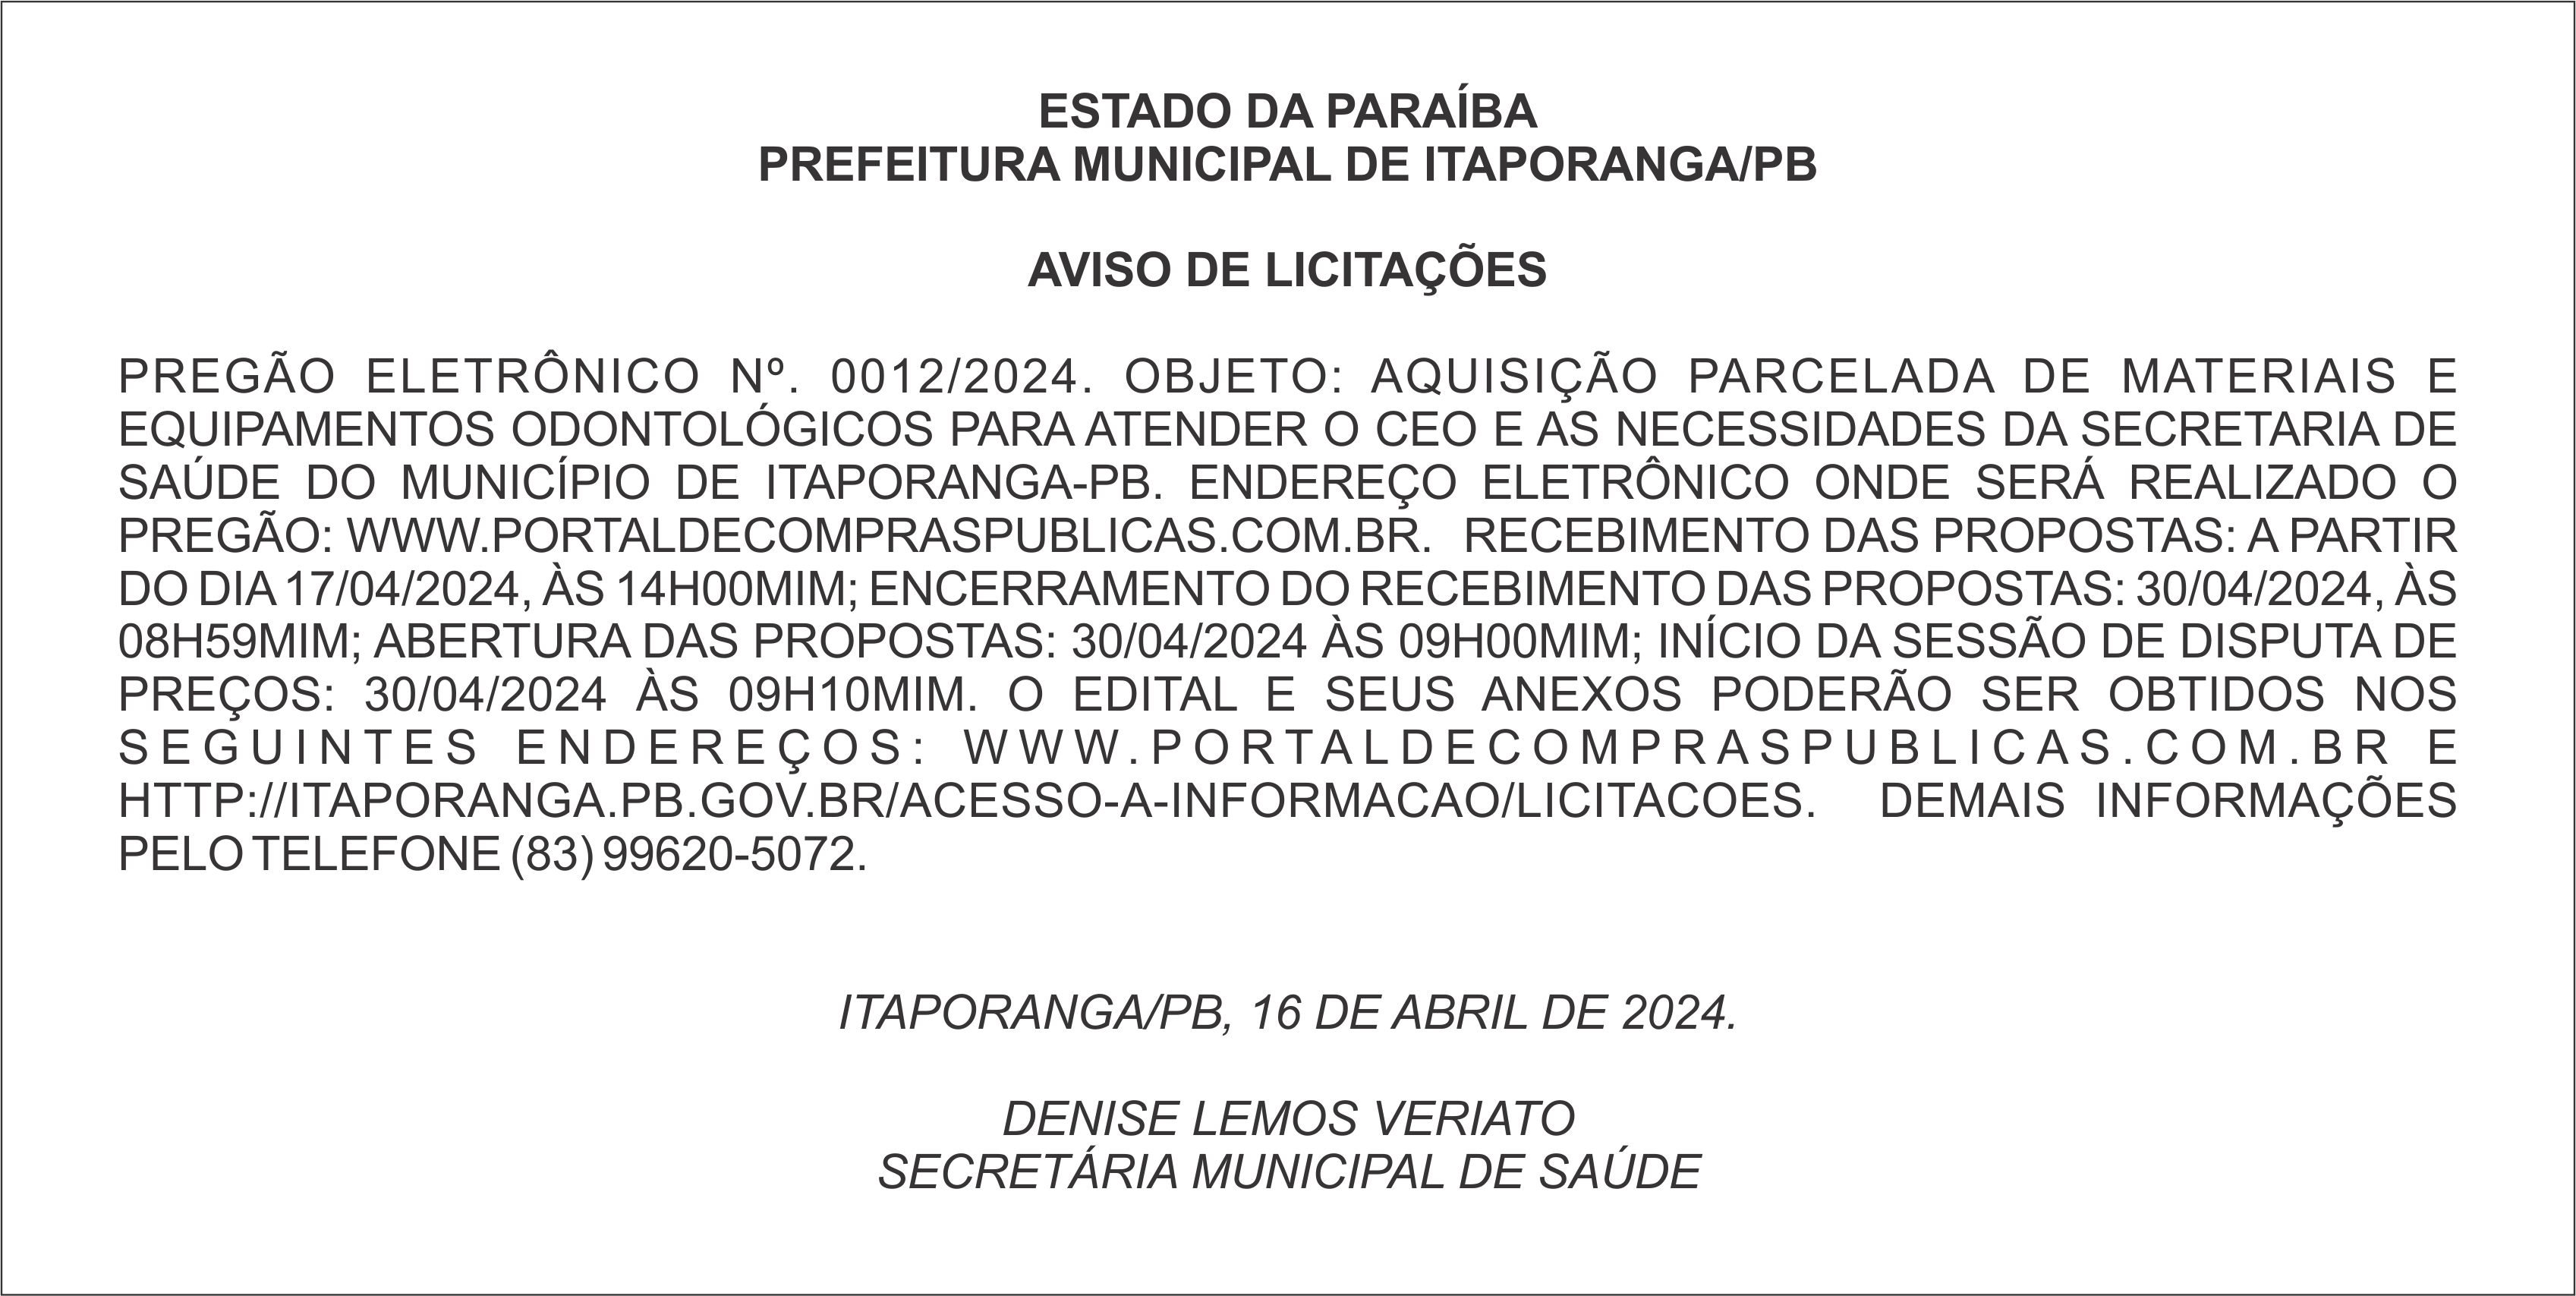 PREFEITURA MUNICIPAL DE ITAPORANGA/PB – AVISO DE LICITAÇÕES – PREGÃO ELETRÔNICO Nº. 0012/2024